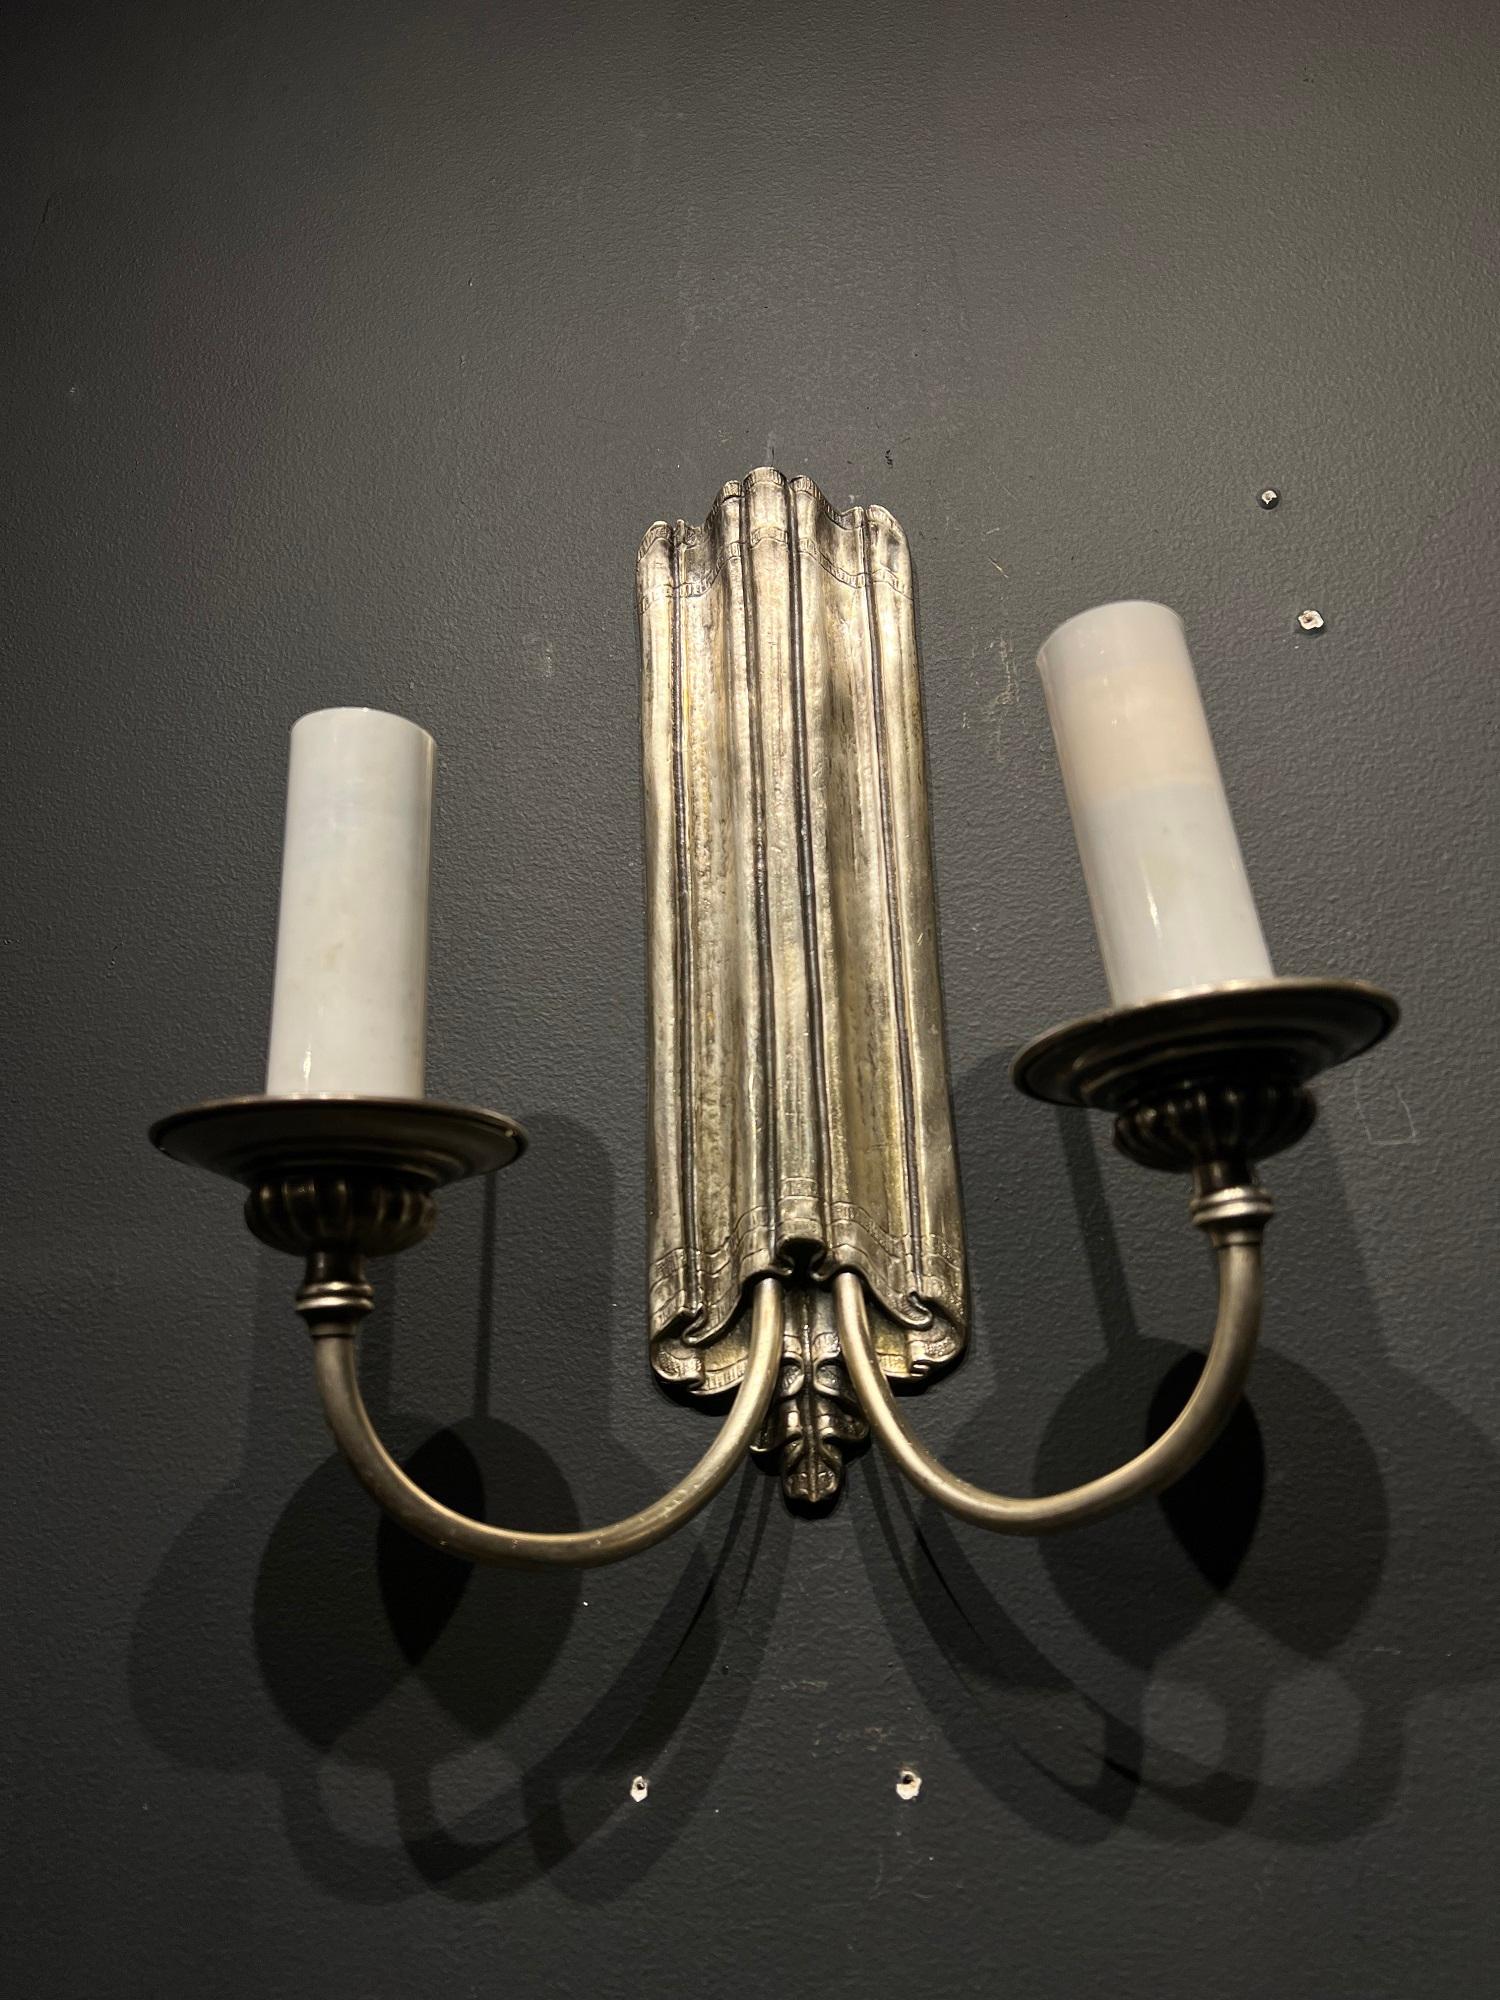 Paire d'appliques simples en métal argenté à deux lumières, datant des années 1920, de CIRCA